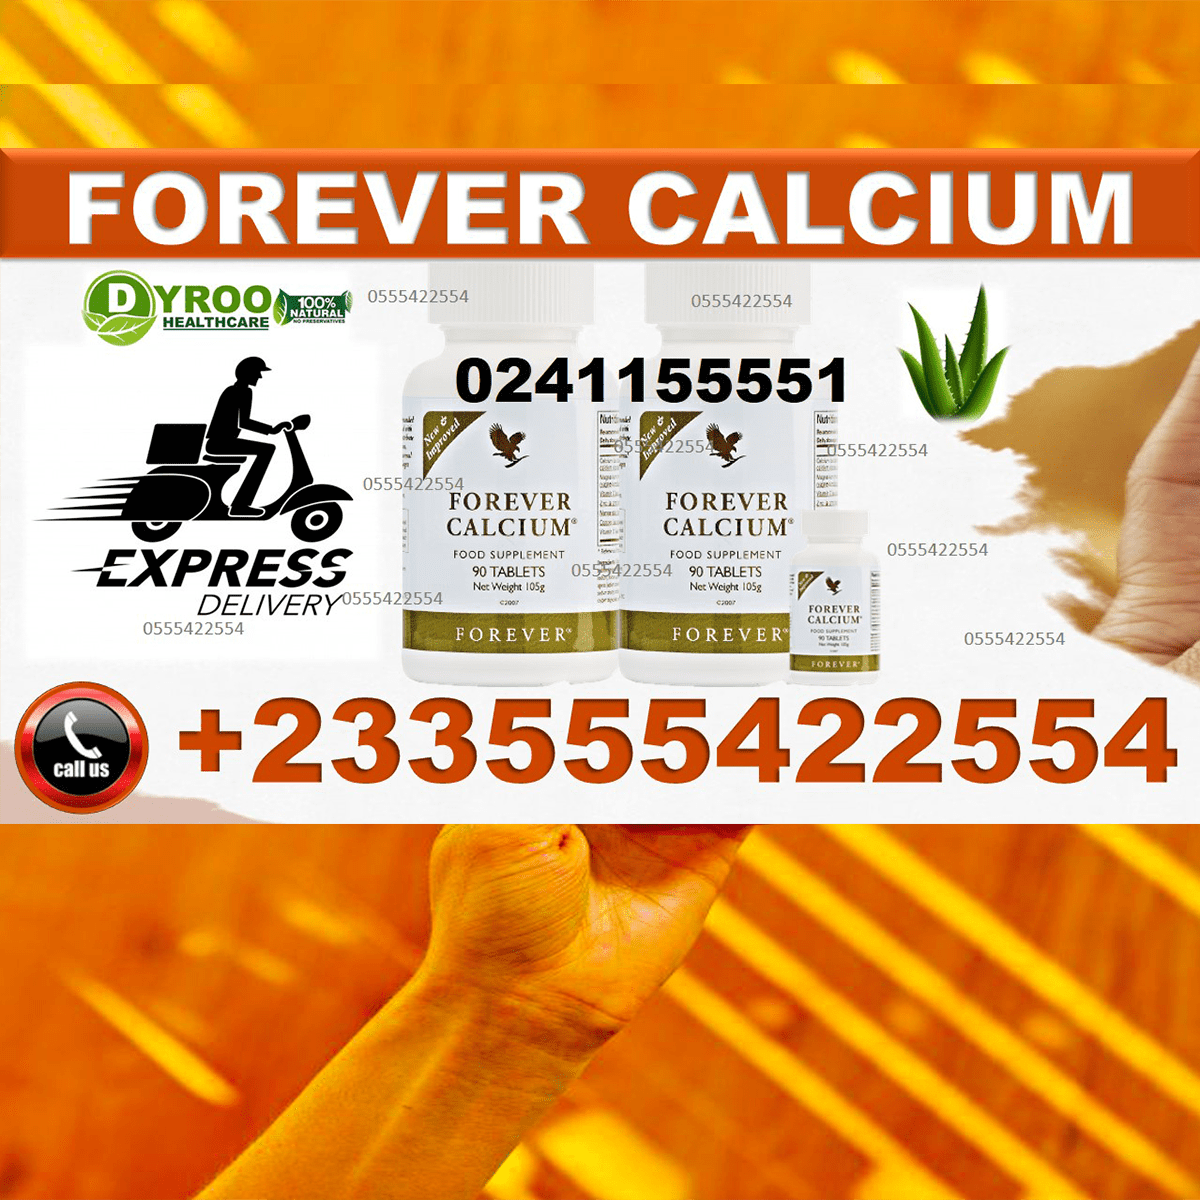 Forever Calcium in Ghana